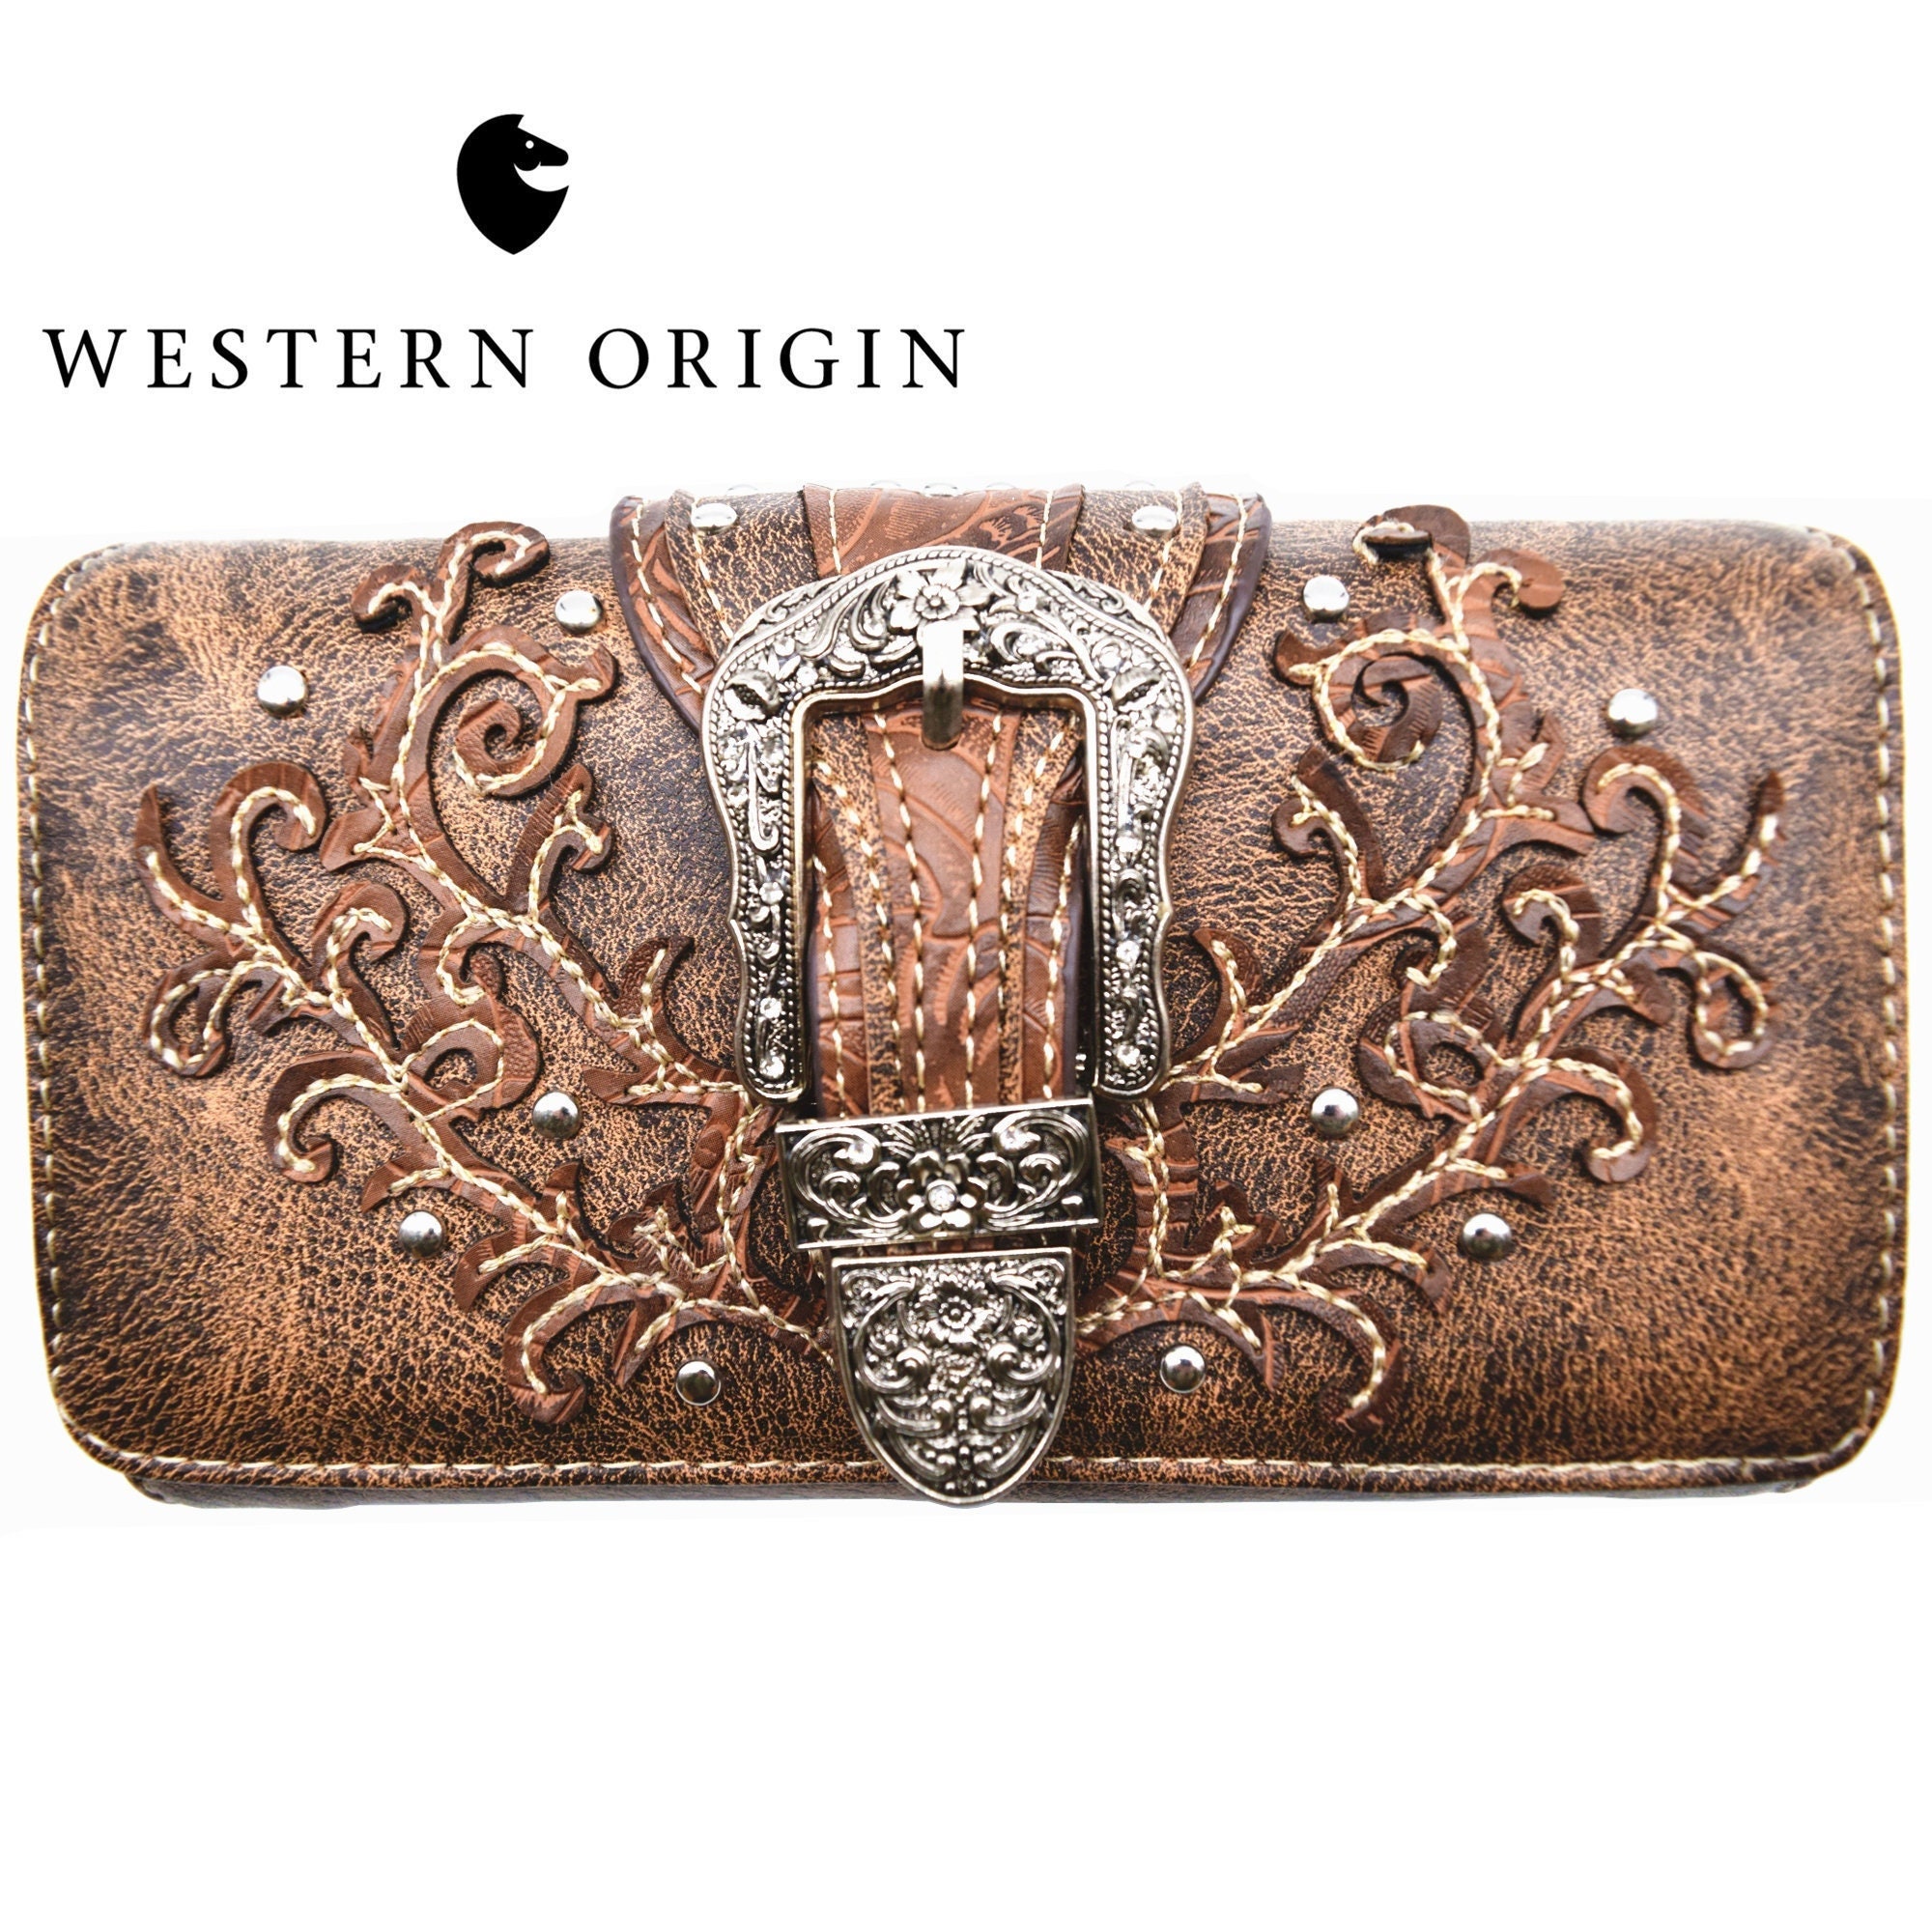 Tureclos Women's Cute Luxury Trifold Wallet